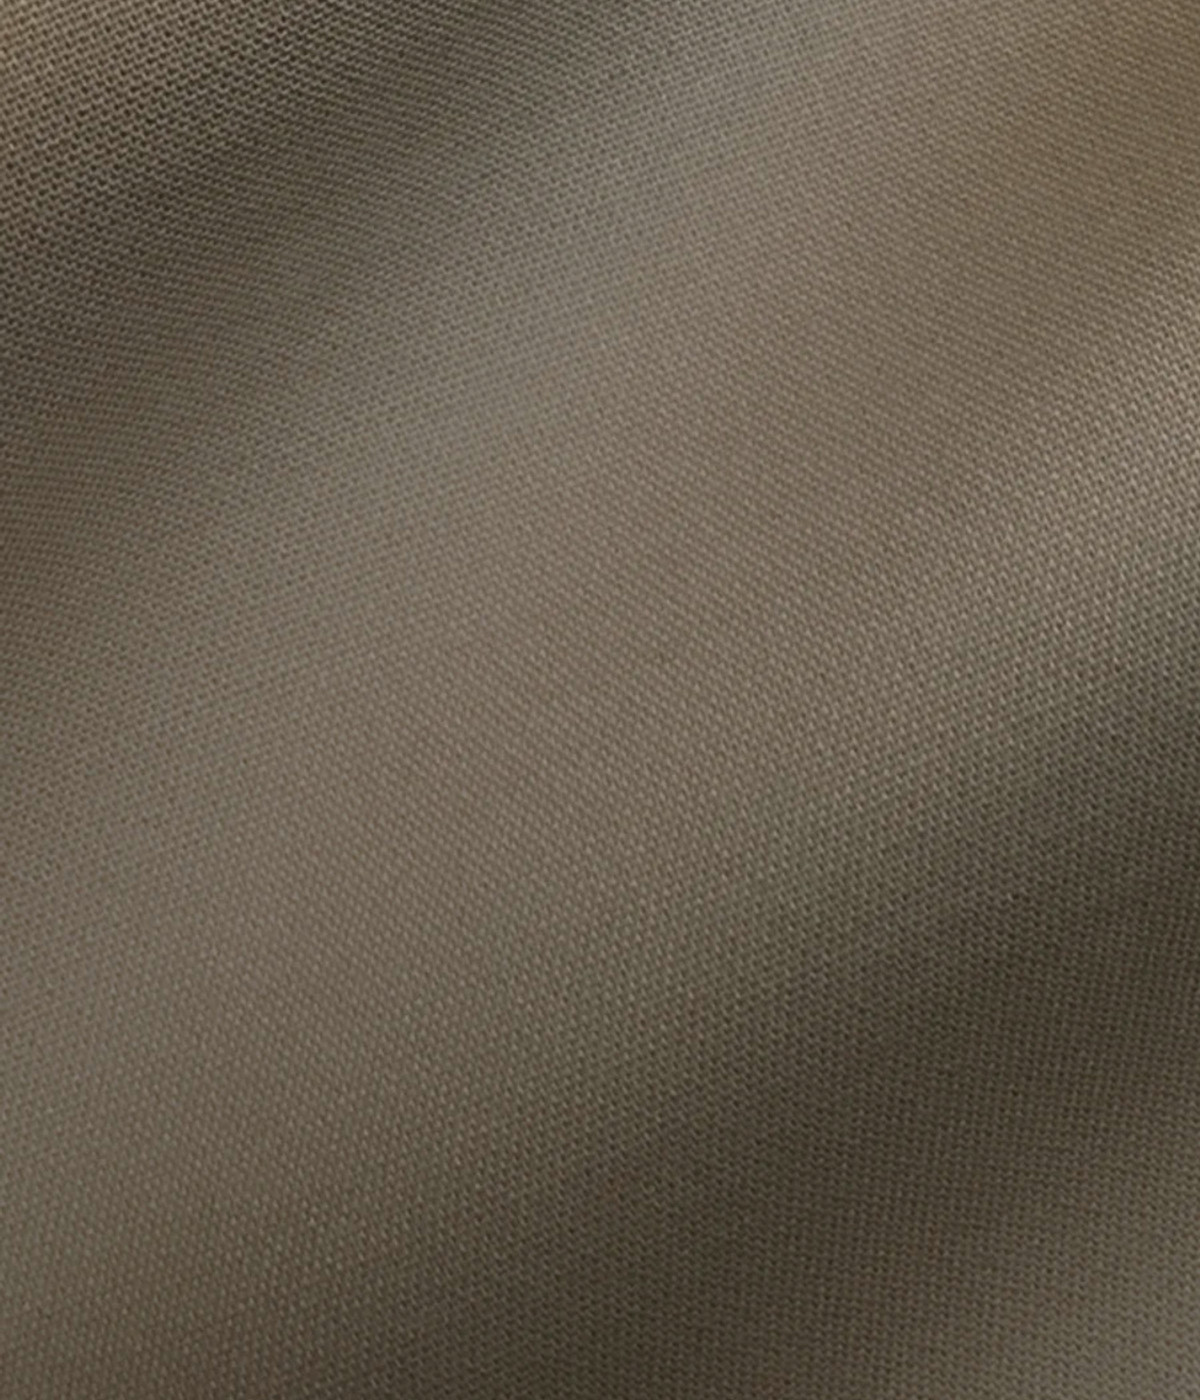 Pebble Brown Khaki Cotton Suit- view-3